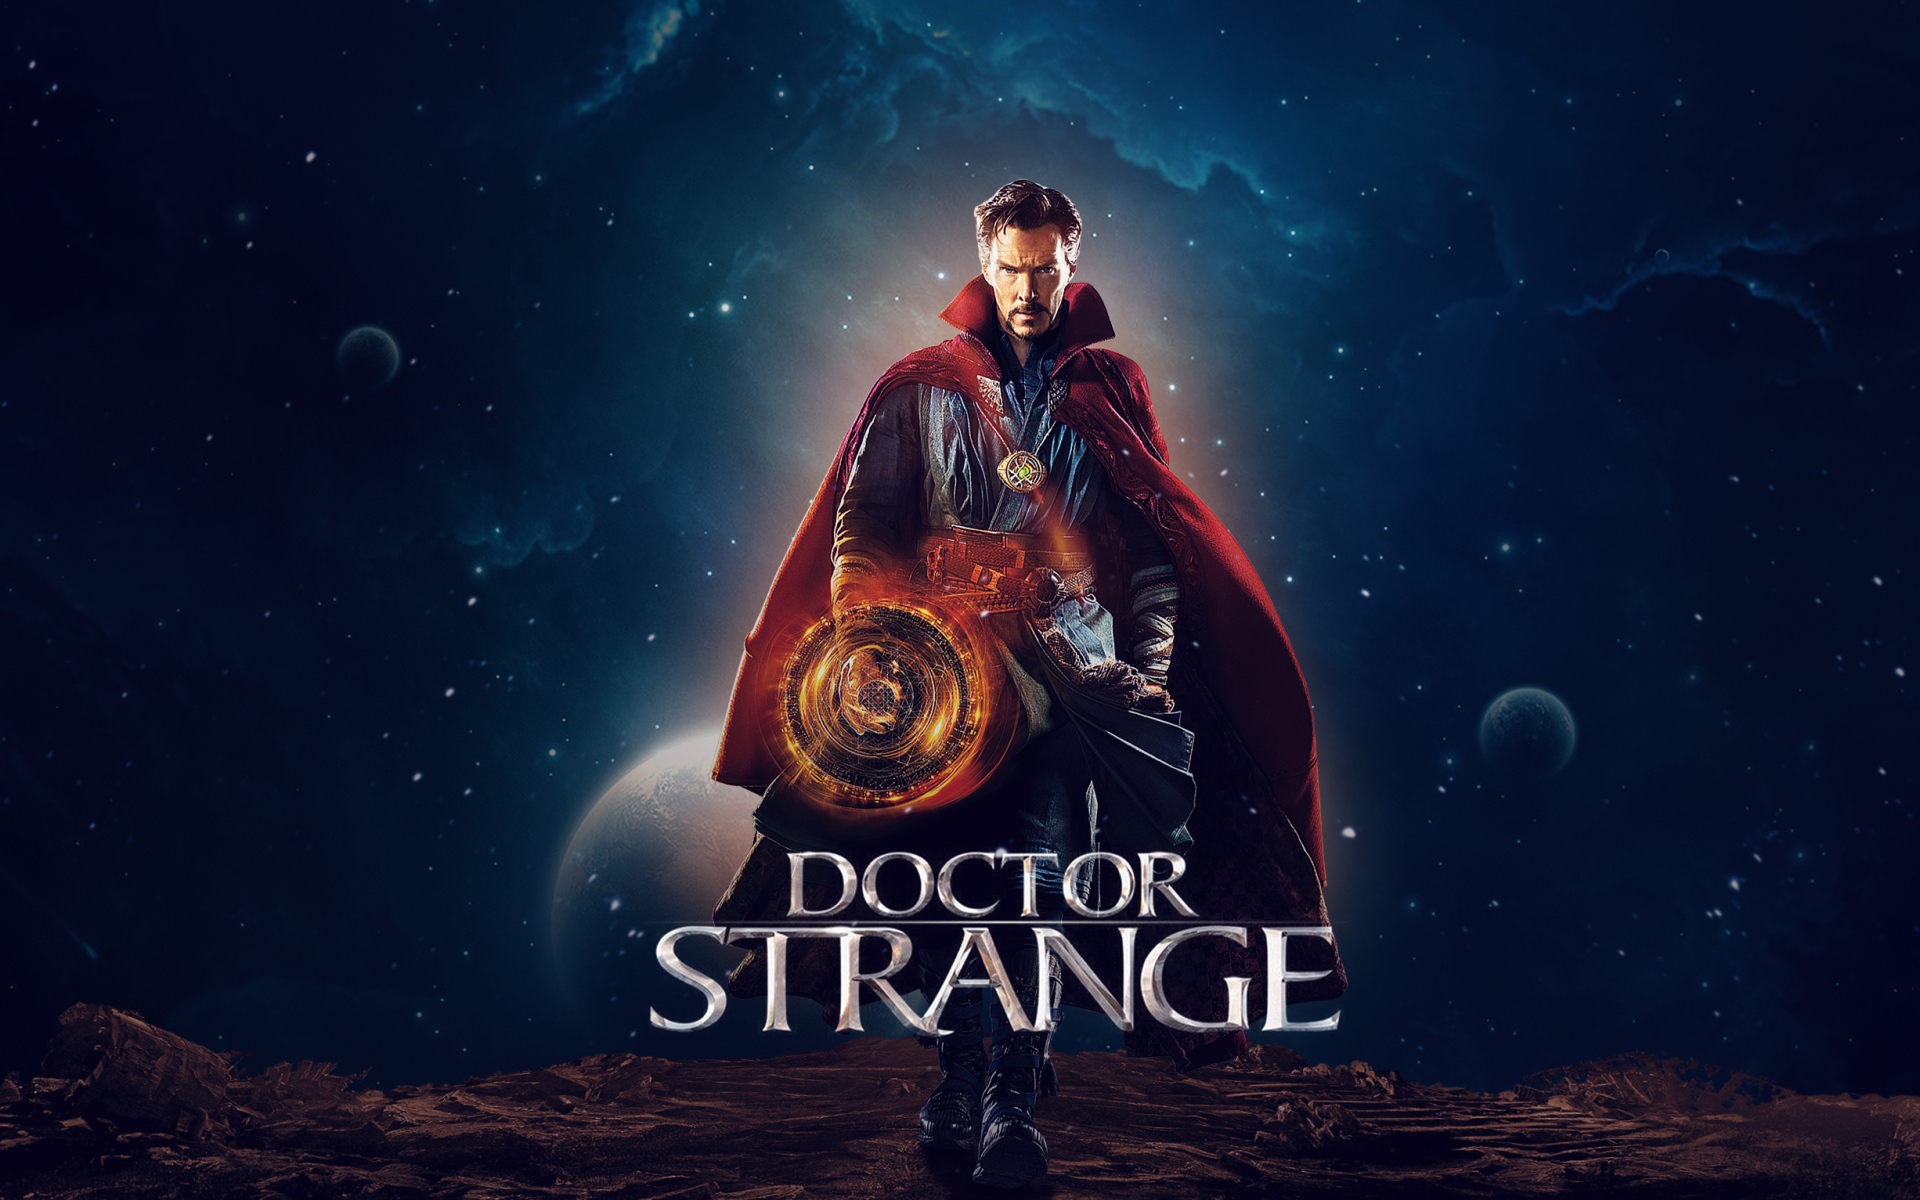 Actor Benedict Cumberbatch in the film Doctor Strange